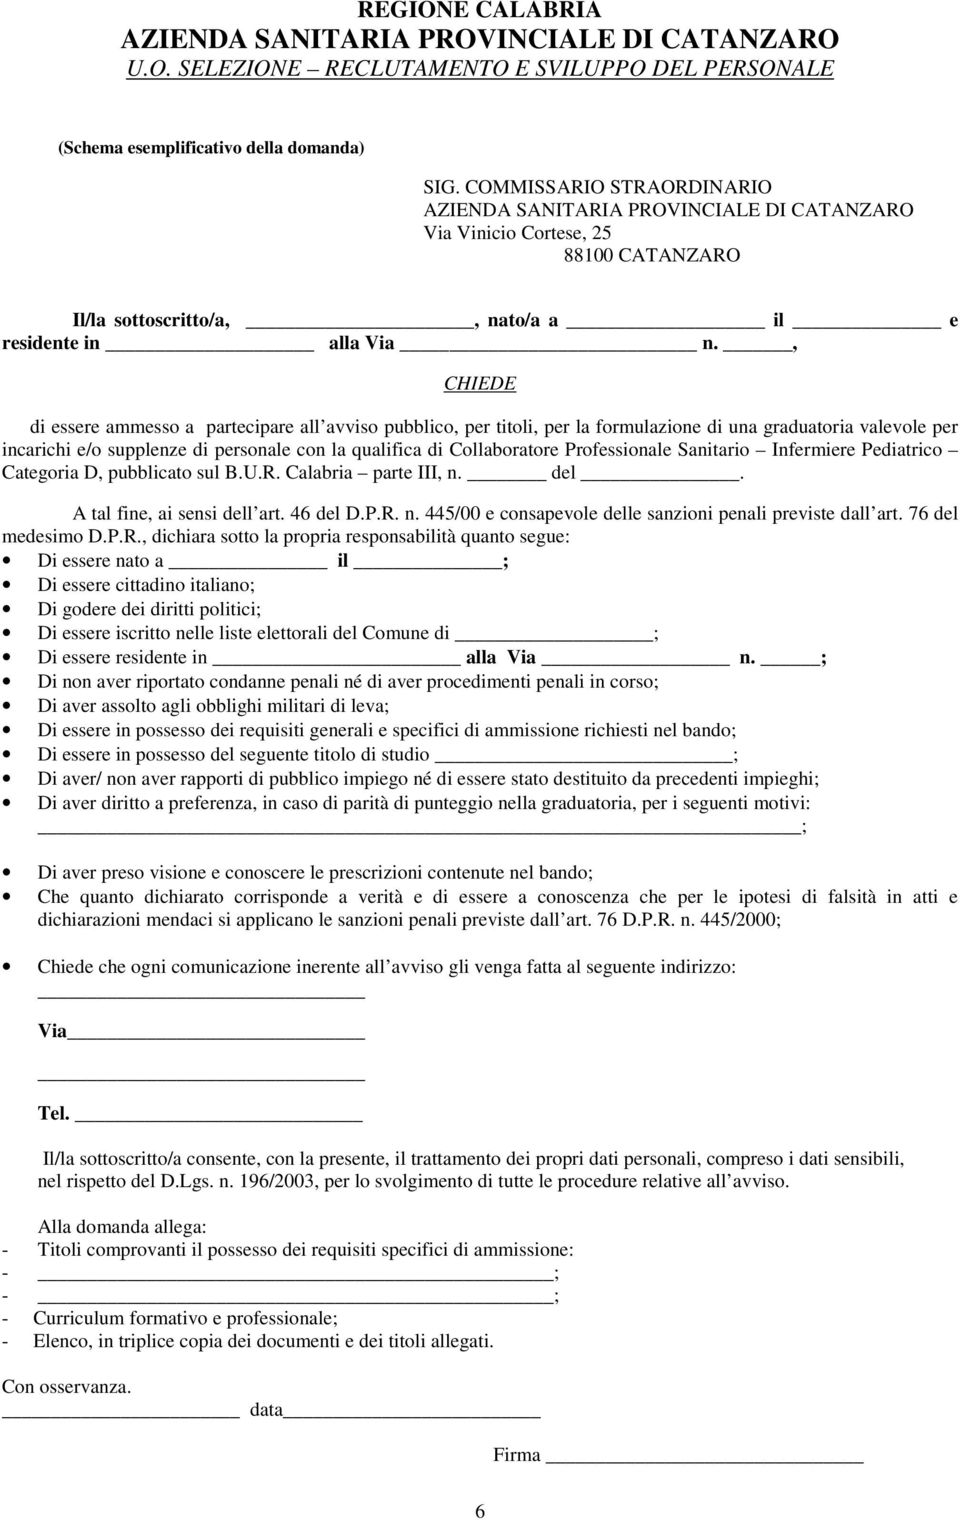 Professionale Sanitario Infermiere Pediatrico Categoria D, pubblicato sul B.U.R. Calabria parte III, n. del. A tal fine, ai sensi dell art. 46 del D.P.R. n. 445/00 e consapevole delle sanzioni penali previste dall art.